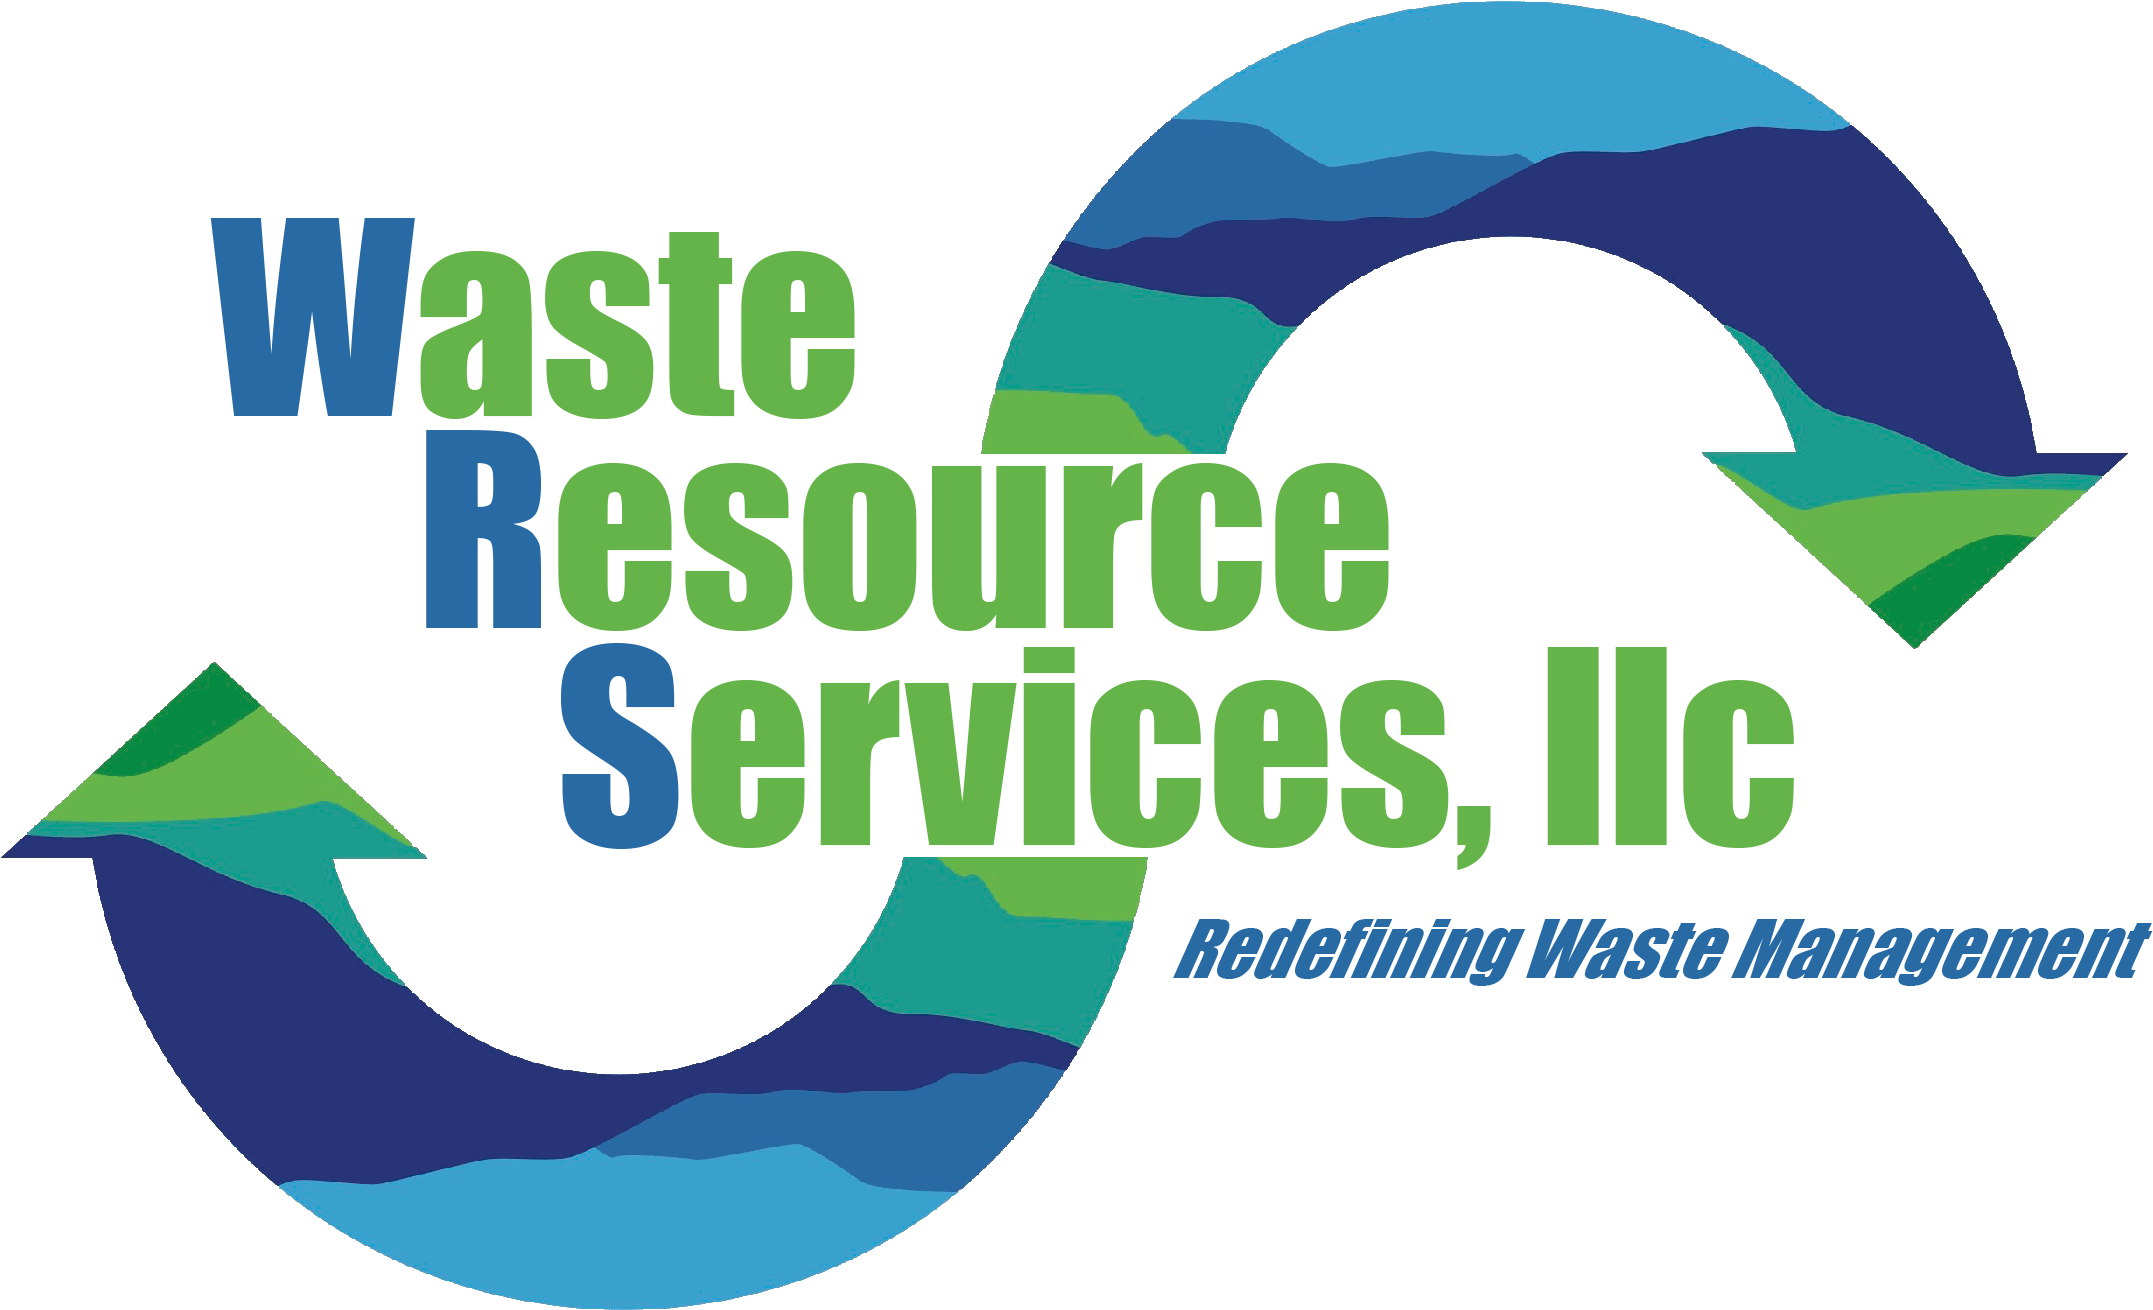 Waste Resource Services - Service (2920x1677)